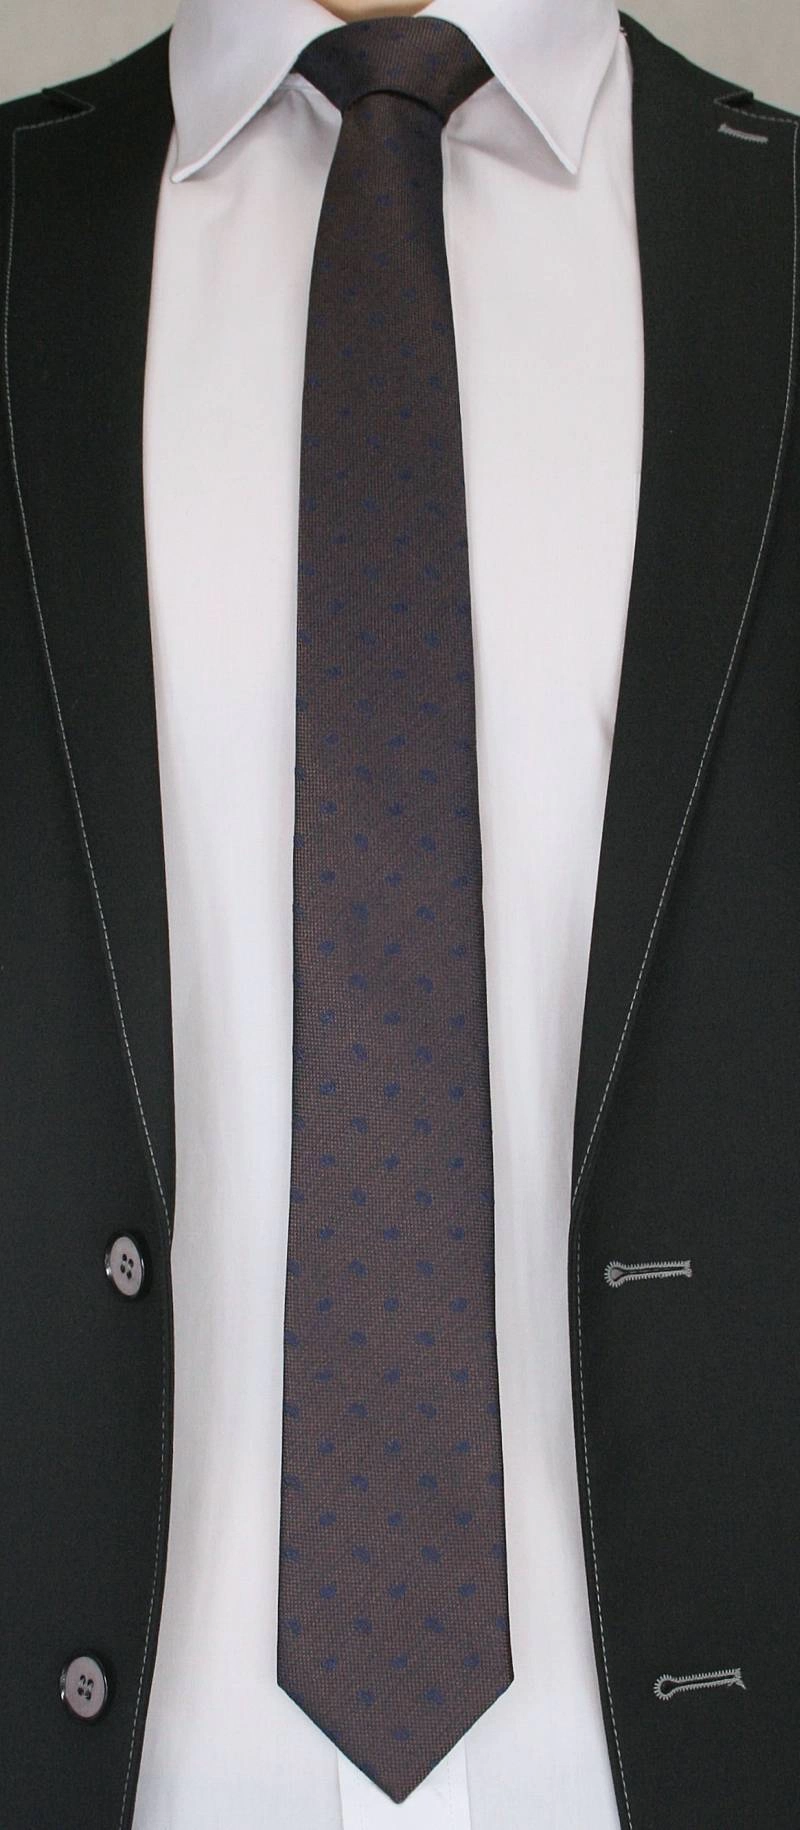 Krawat Męski w Drobny, Granatowy Wzór Paisley - Chattier, Ciemny Brązowy